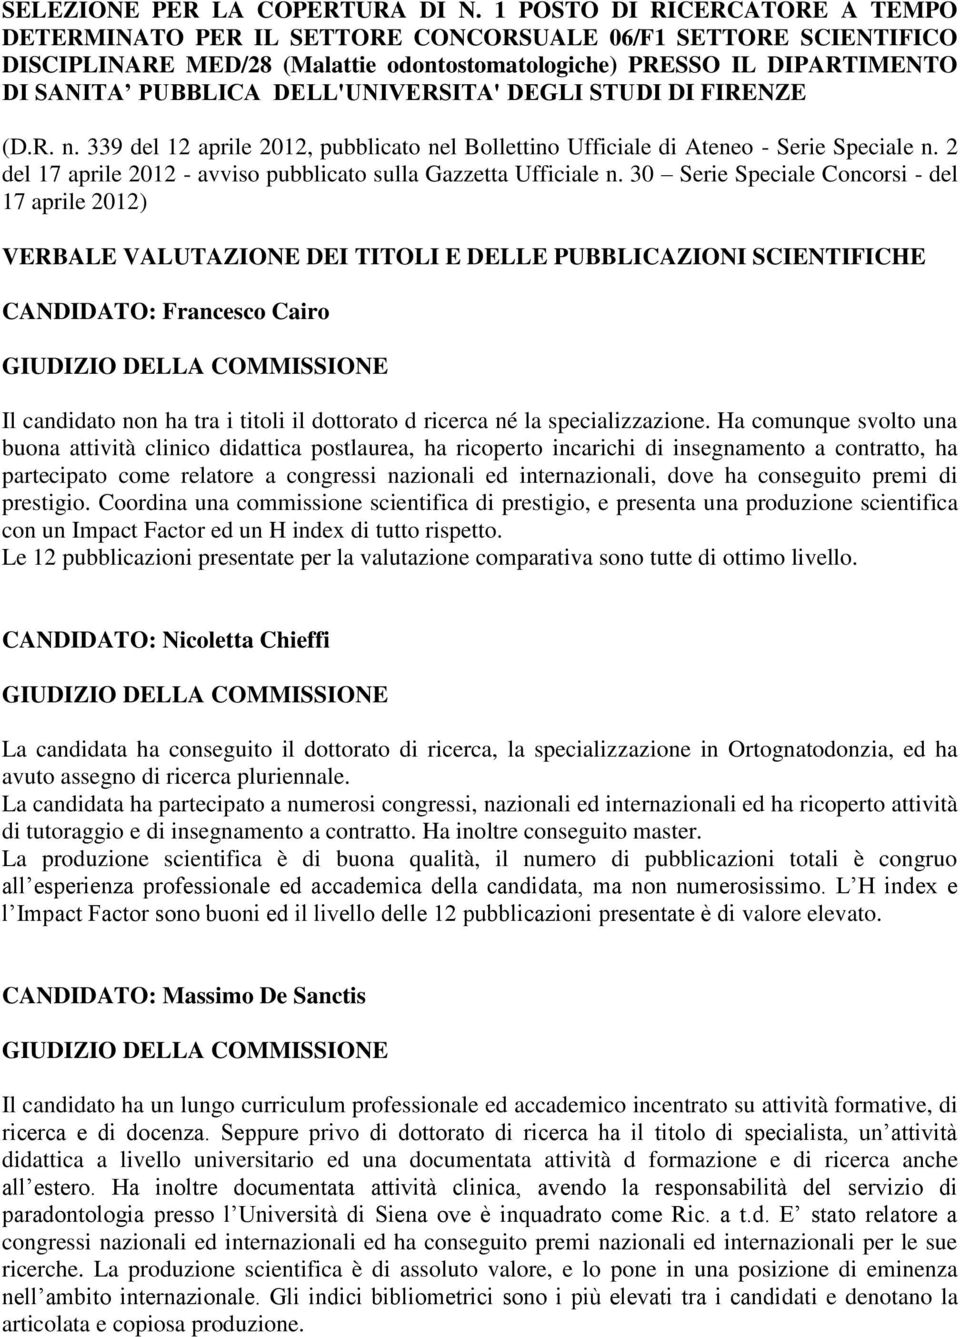 DELL'UNIVERSITA' DEGLI STUDI DI FIRENZE (D.R. n. 339 del 2 aprile 202, pubblicato nel Bollettino Ufficiale di Ateneo - Serie Speciale n.